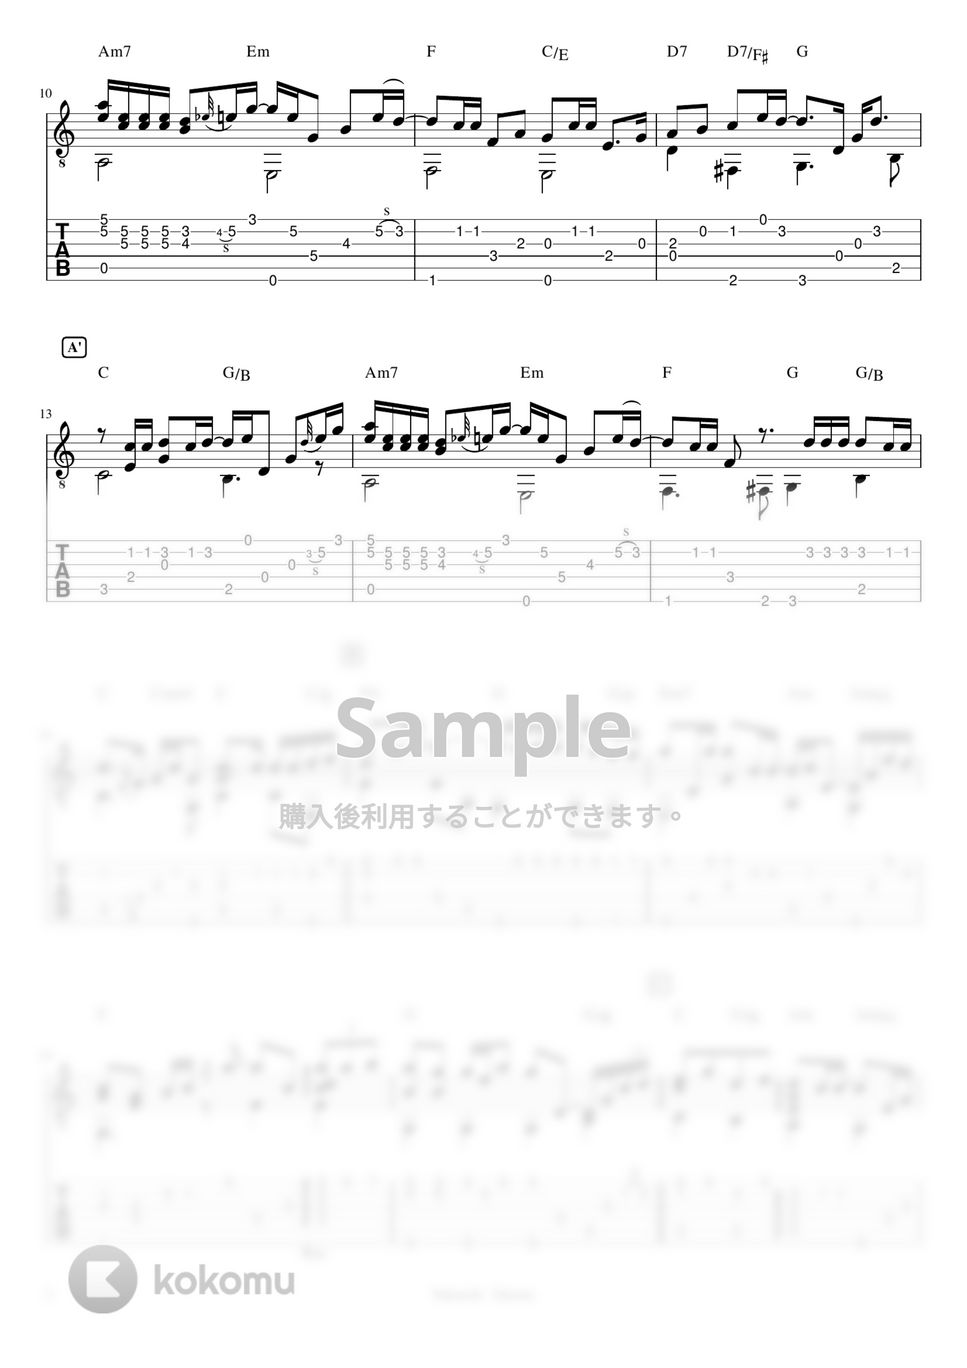 森高千里 - 雨 (ソロギターTAB譜) by 仲内拓磨